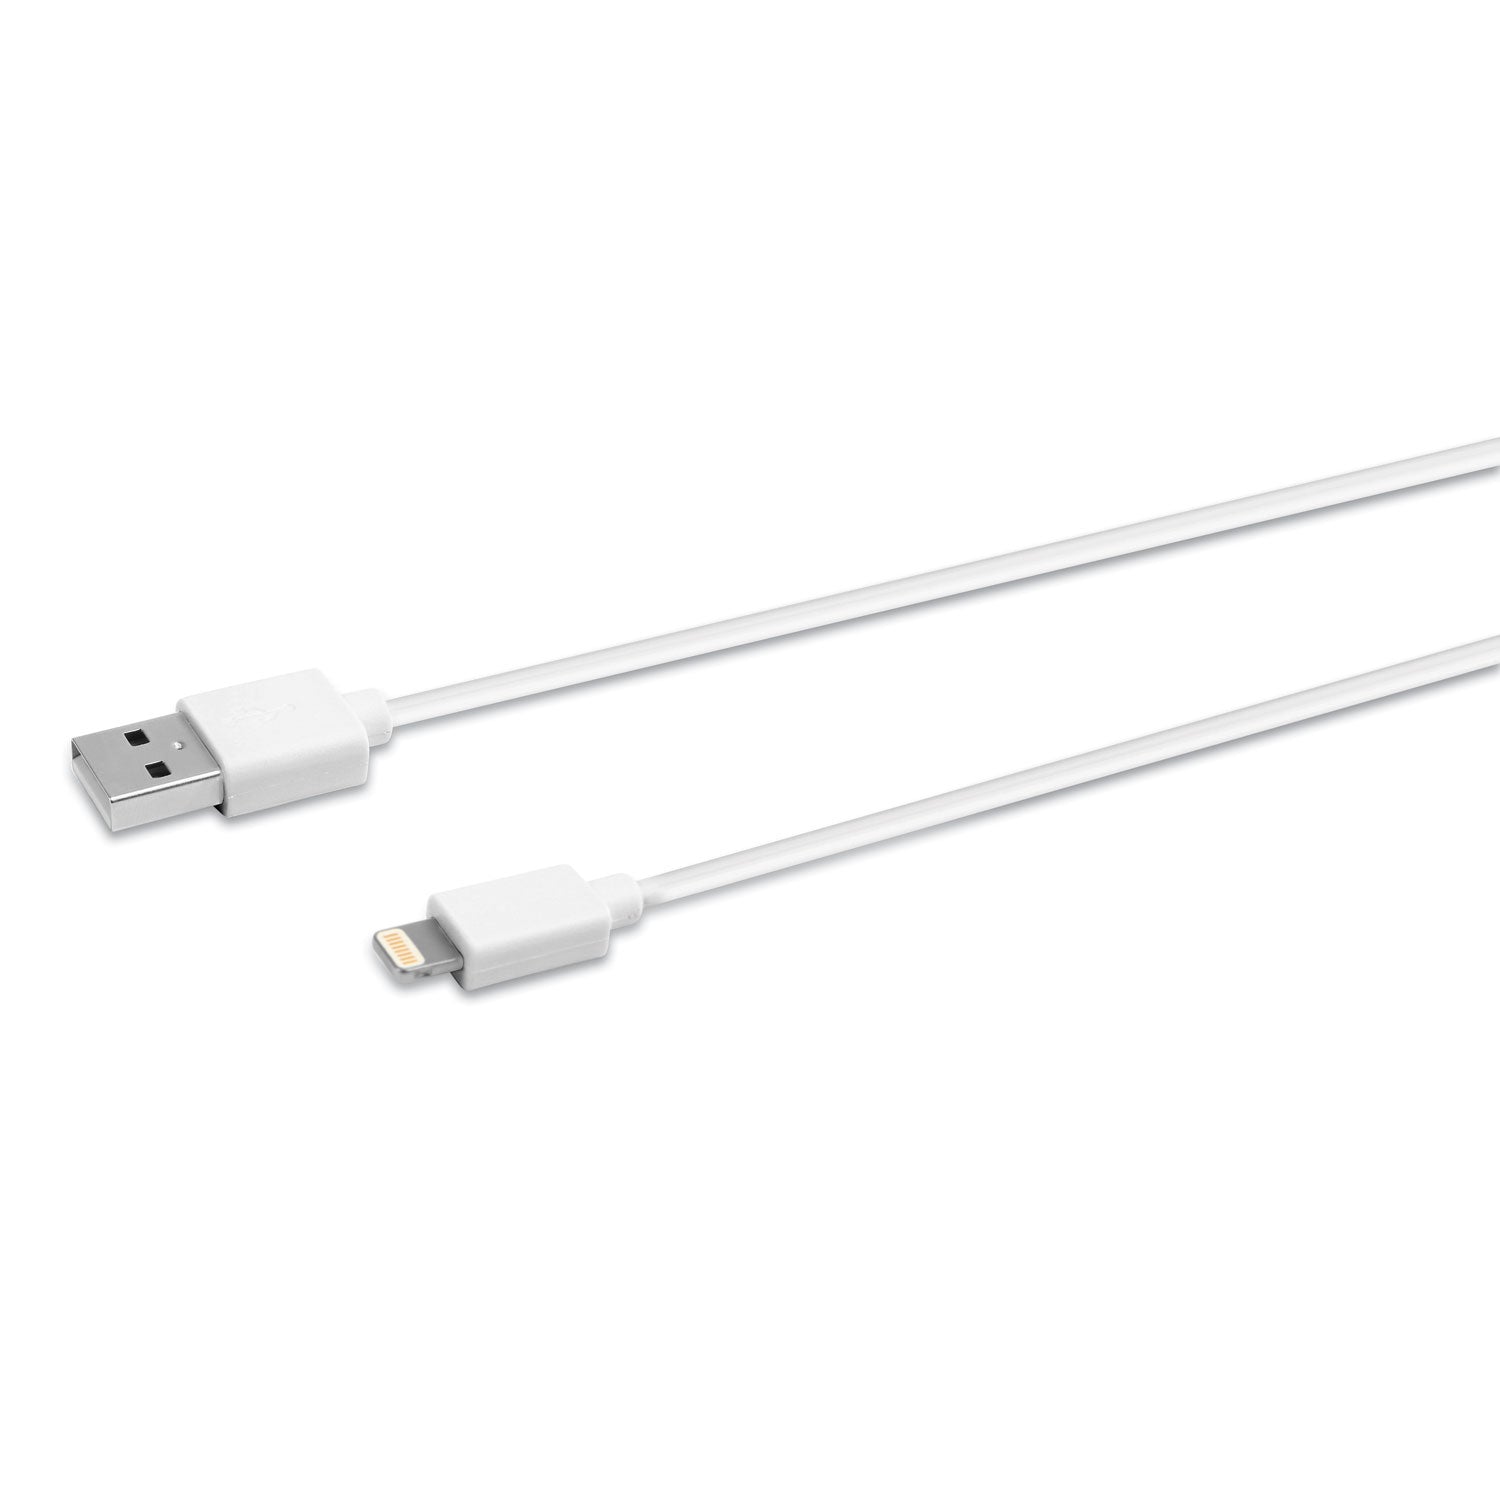 usb-apple-lightning-cable-3-ft-white_ivr30018 - 1